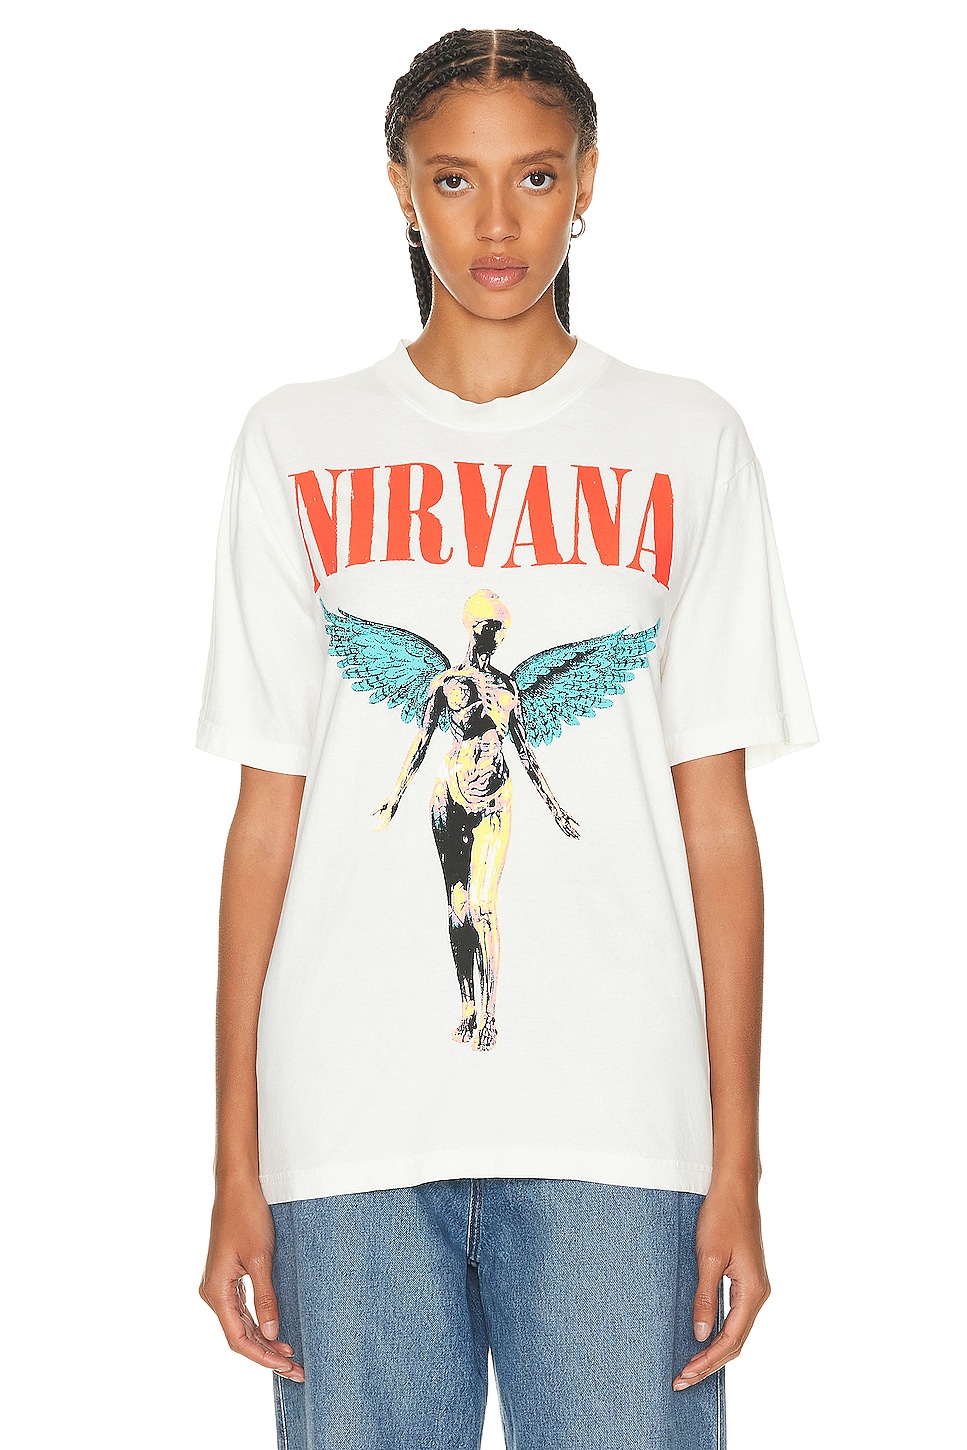 Nirvana T-shirt in Cream